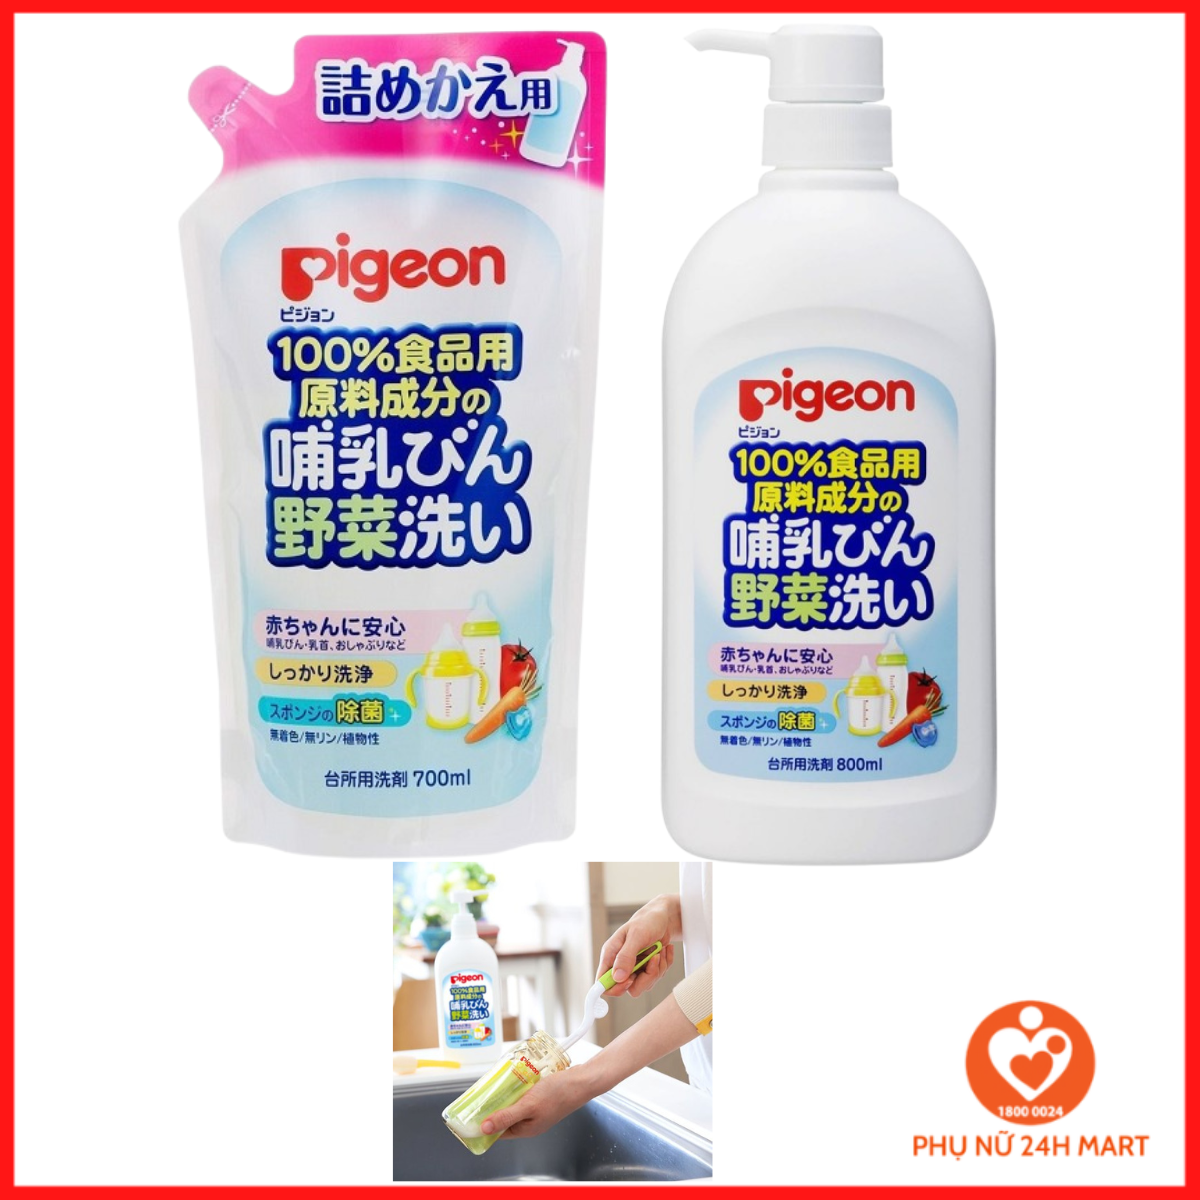 Nước Rửa Bình Sữa Cho Bé Pigeon Nhật Bản - Hàng Nội Địa Nhật